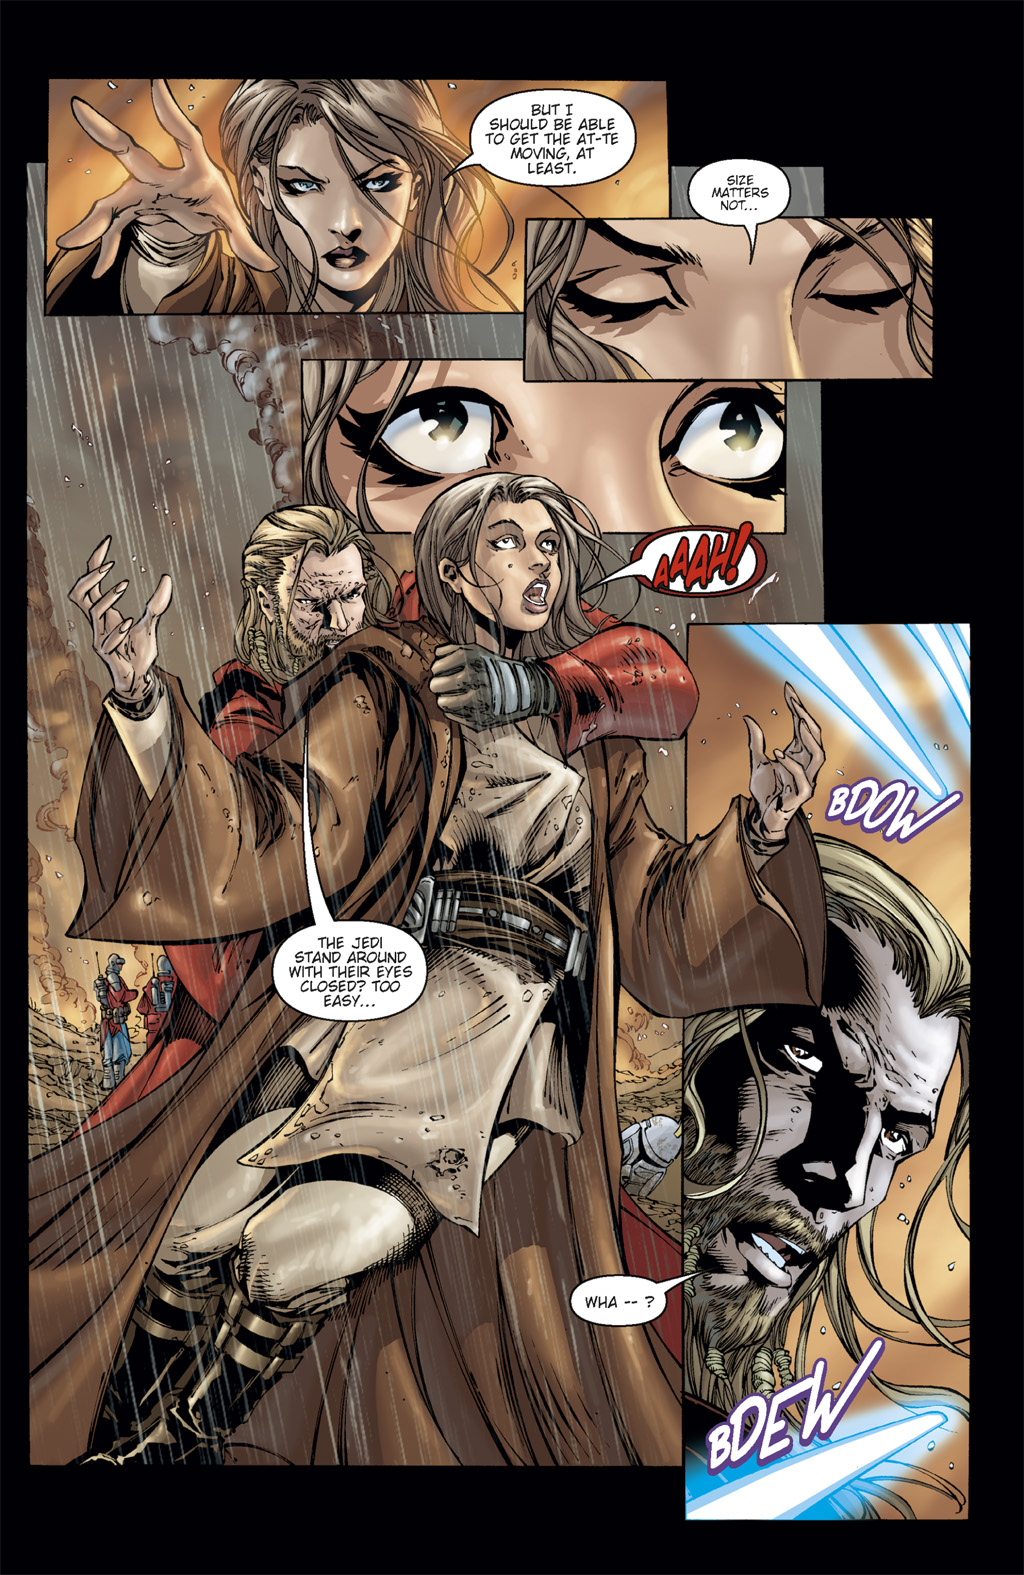 Read online Star Wars: Clone Wars comic -  Issue # TPB 3 - 21